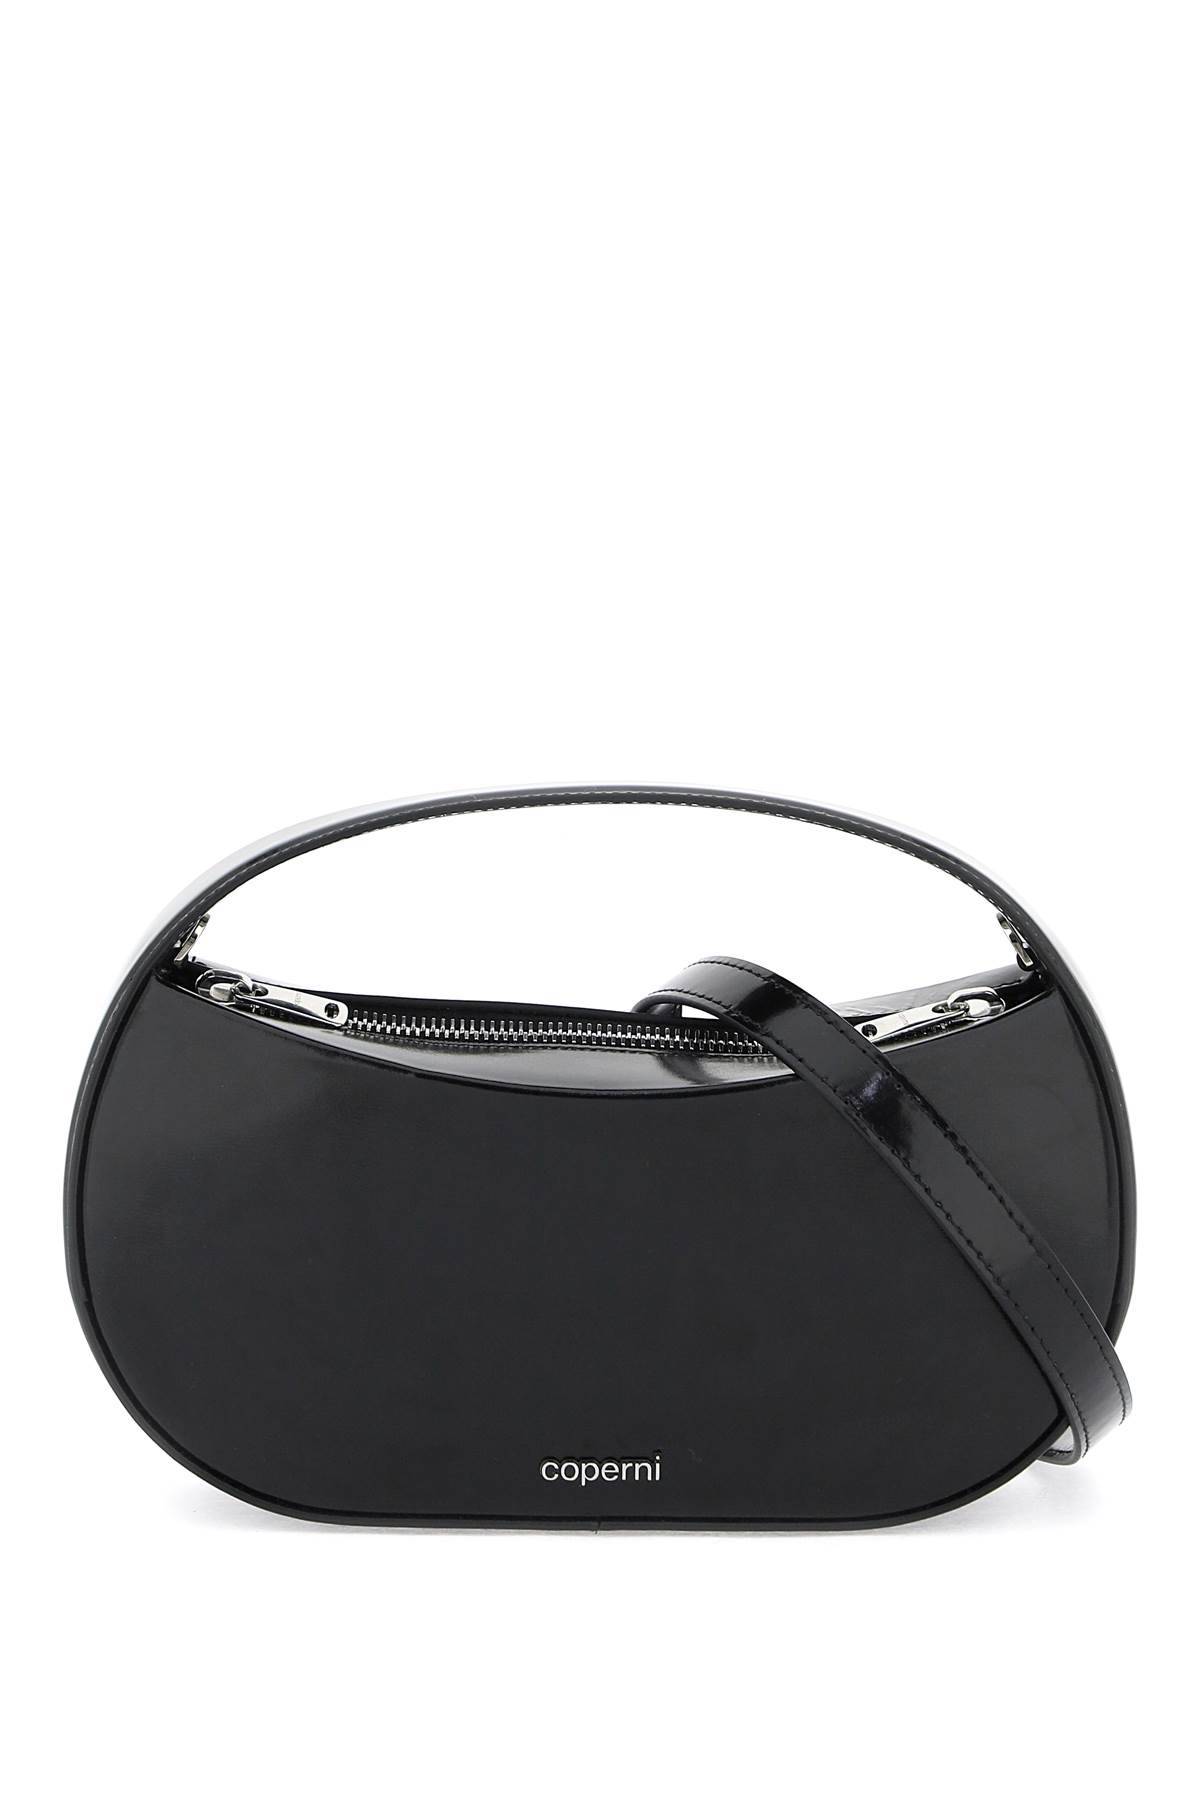 Coperni COPERNI "sound swipe handbag"